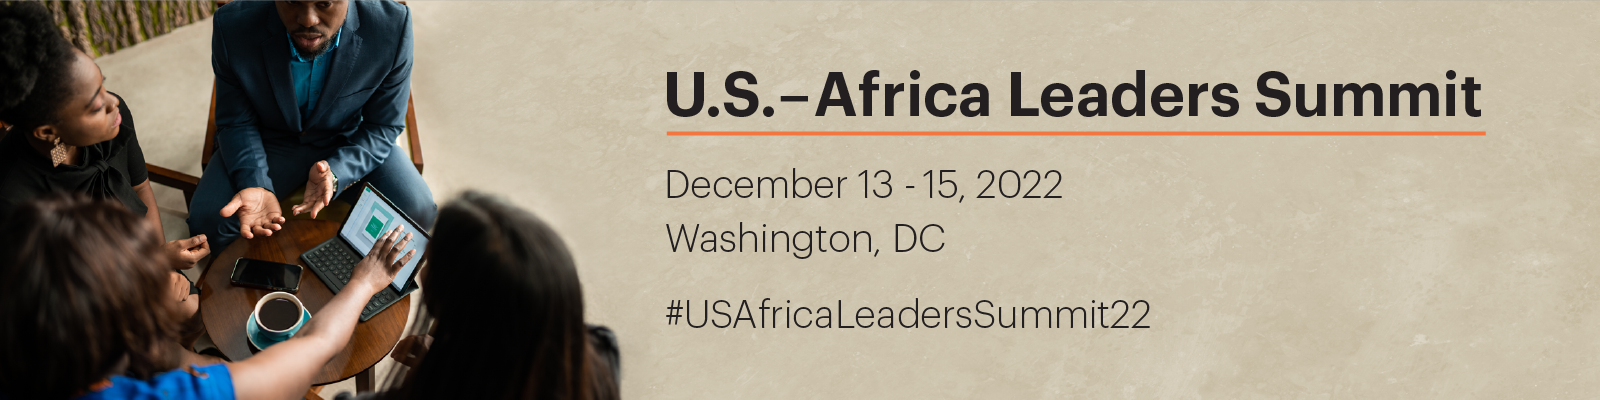 U.S.-Africa Leaders Summit 